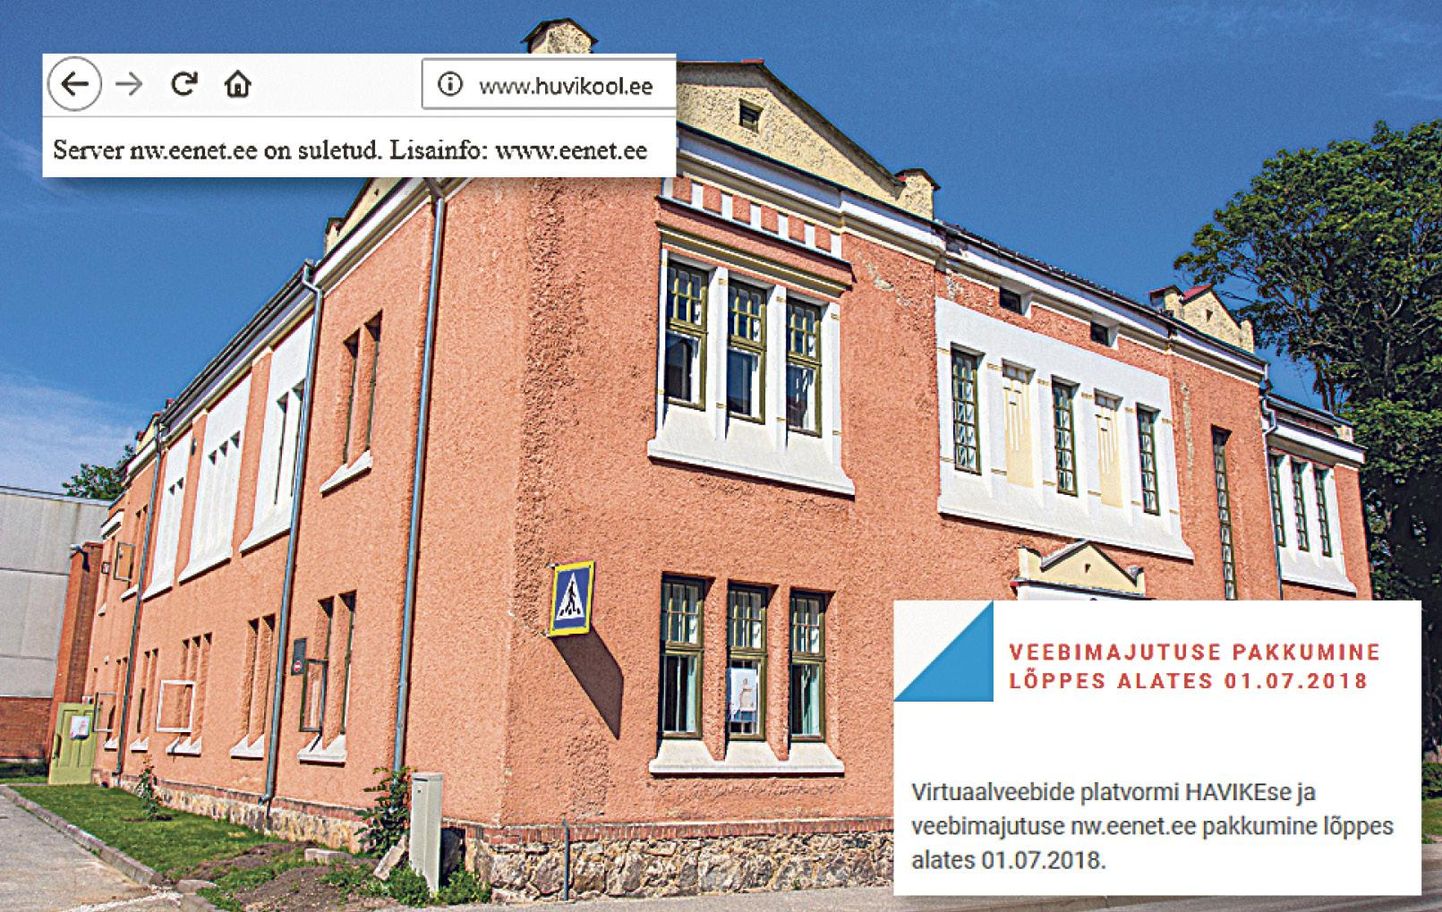 Viljandi huvikooli veebilehe asemel leiab teksti, et server on suletud. Eesti hariduse ja teaduse andmesidevõrgu kodulehelt saab lisaks teada, et see suleti 1. juulist.